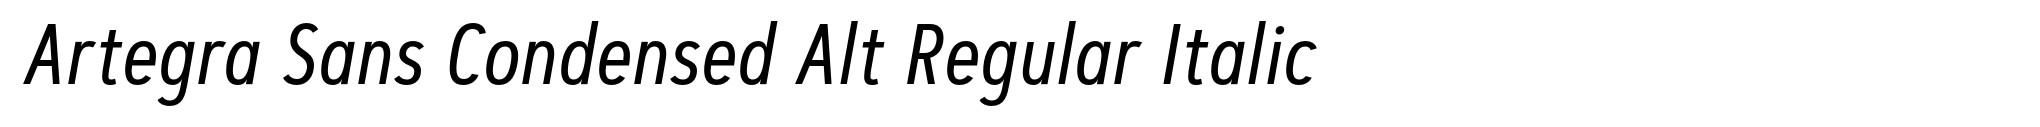 Artegra Sans Condensed Alt Regular Italic image